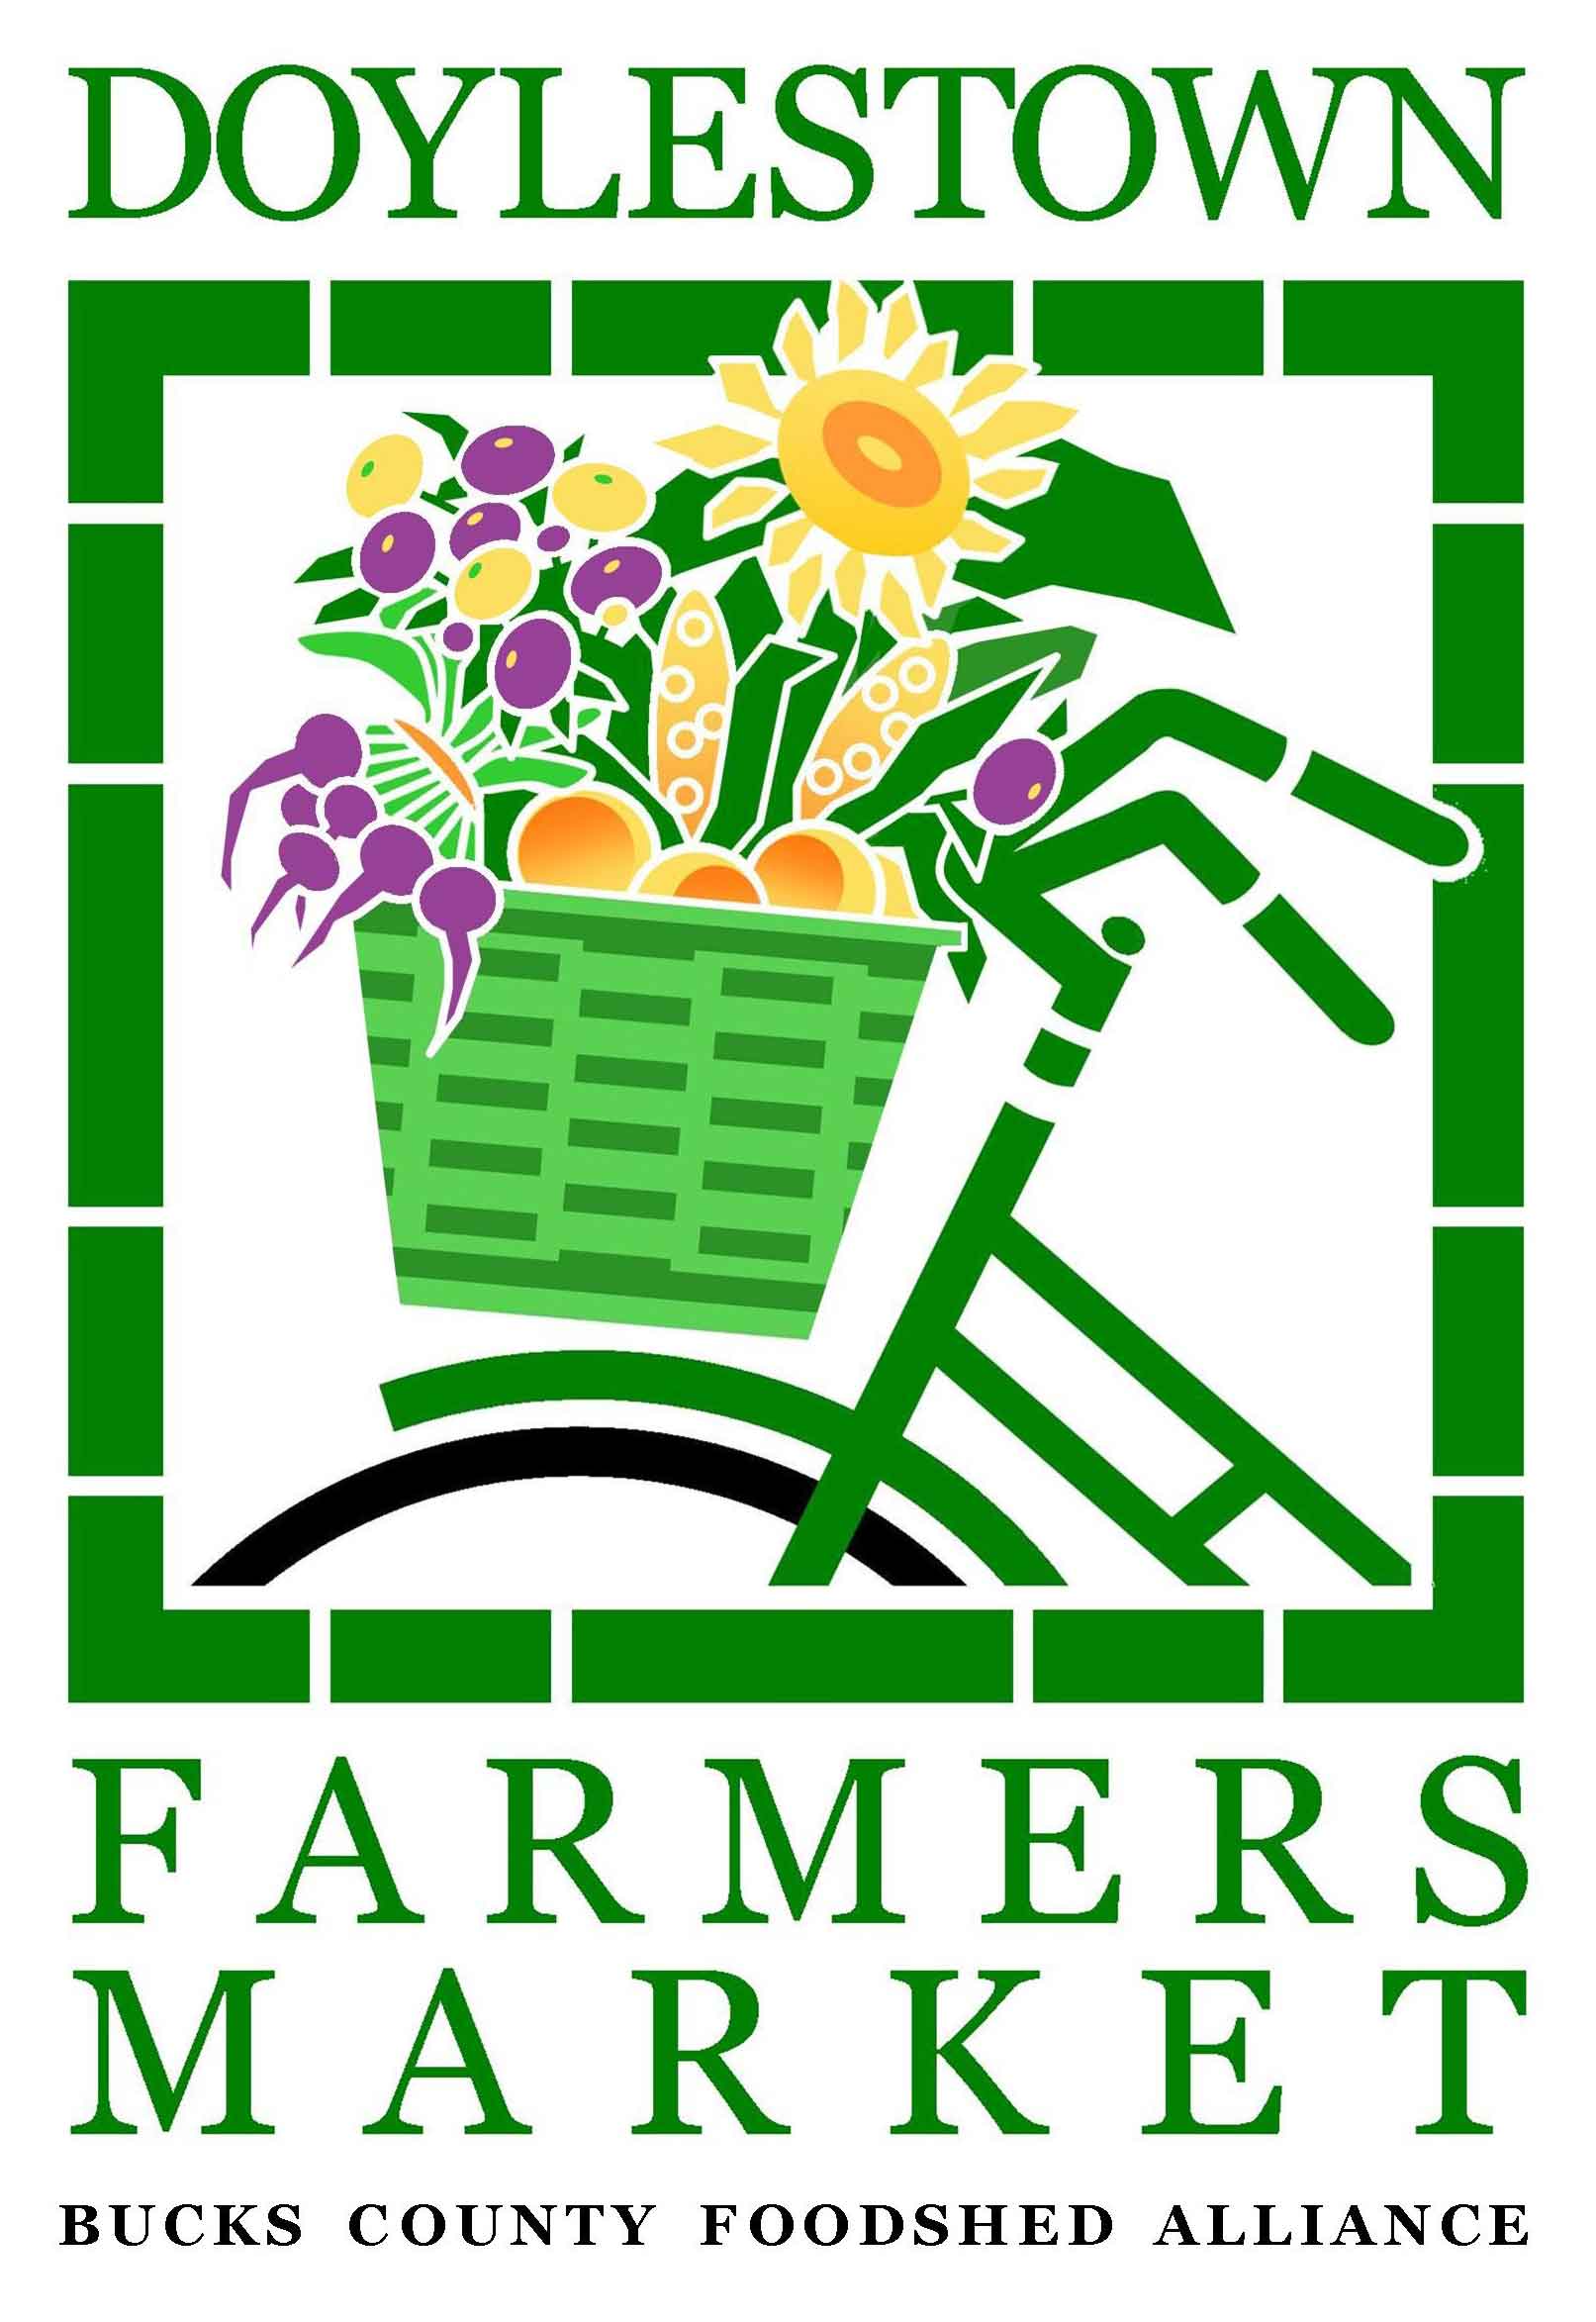 Dolyestown-Farmers-Market-Logo.jpg